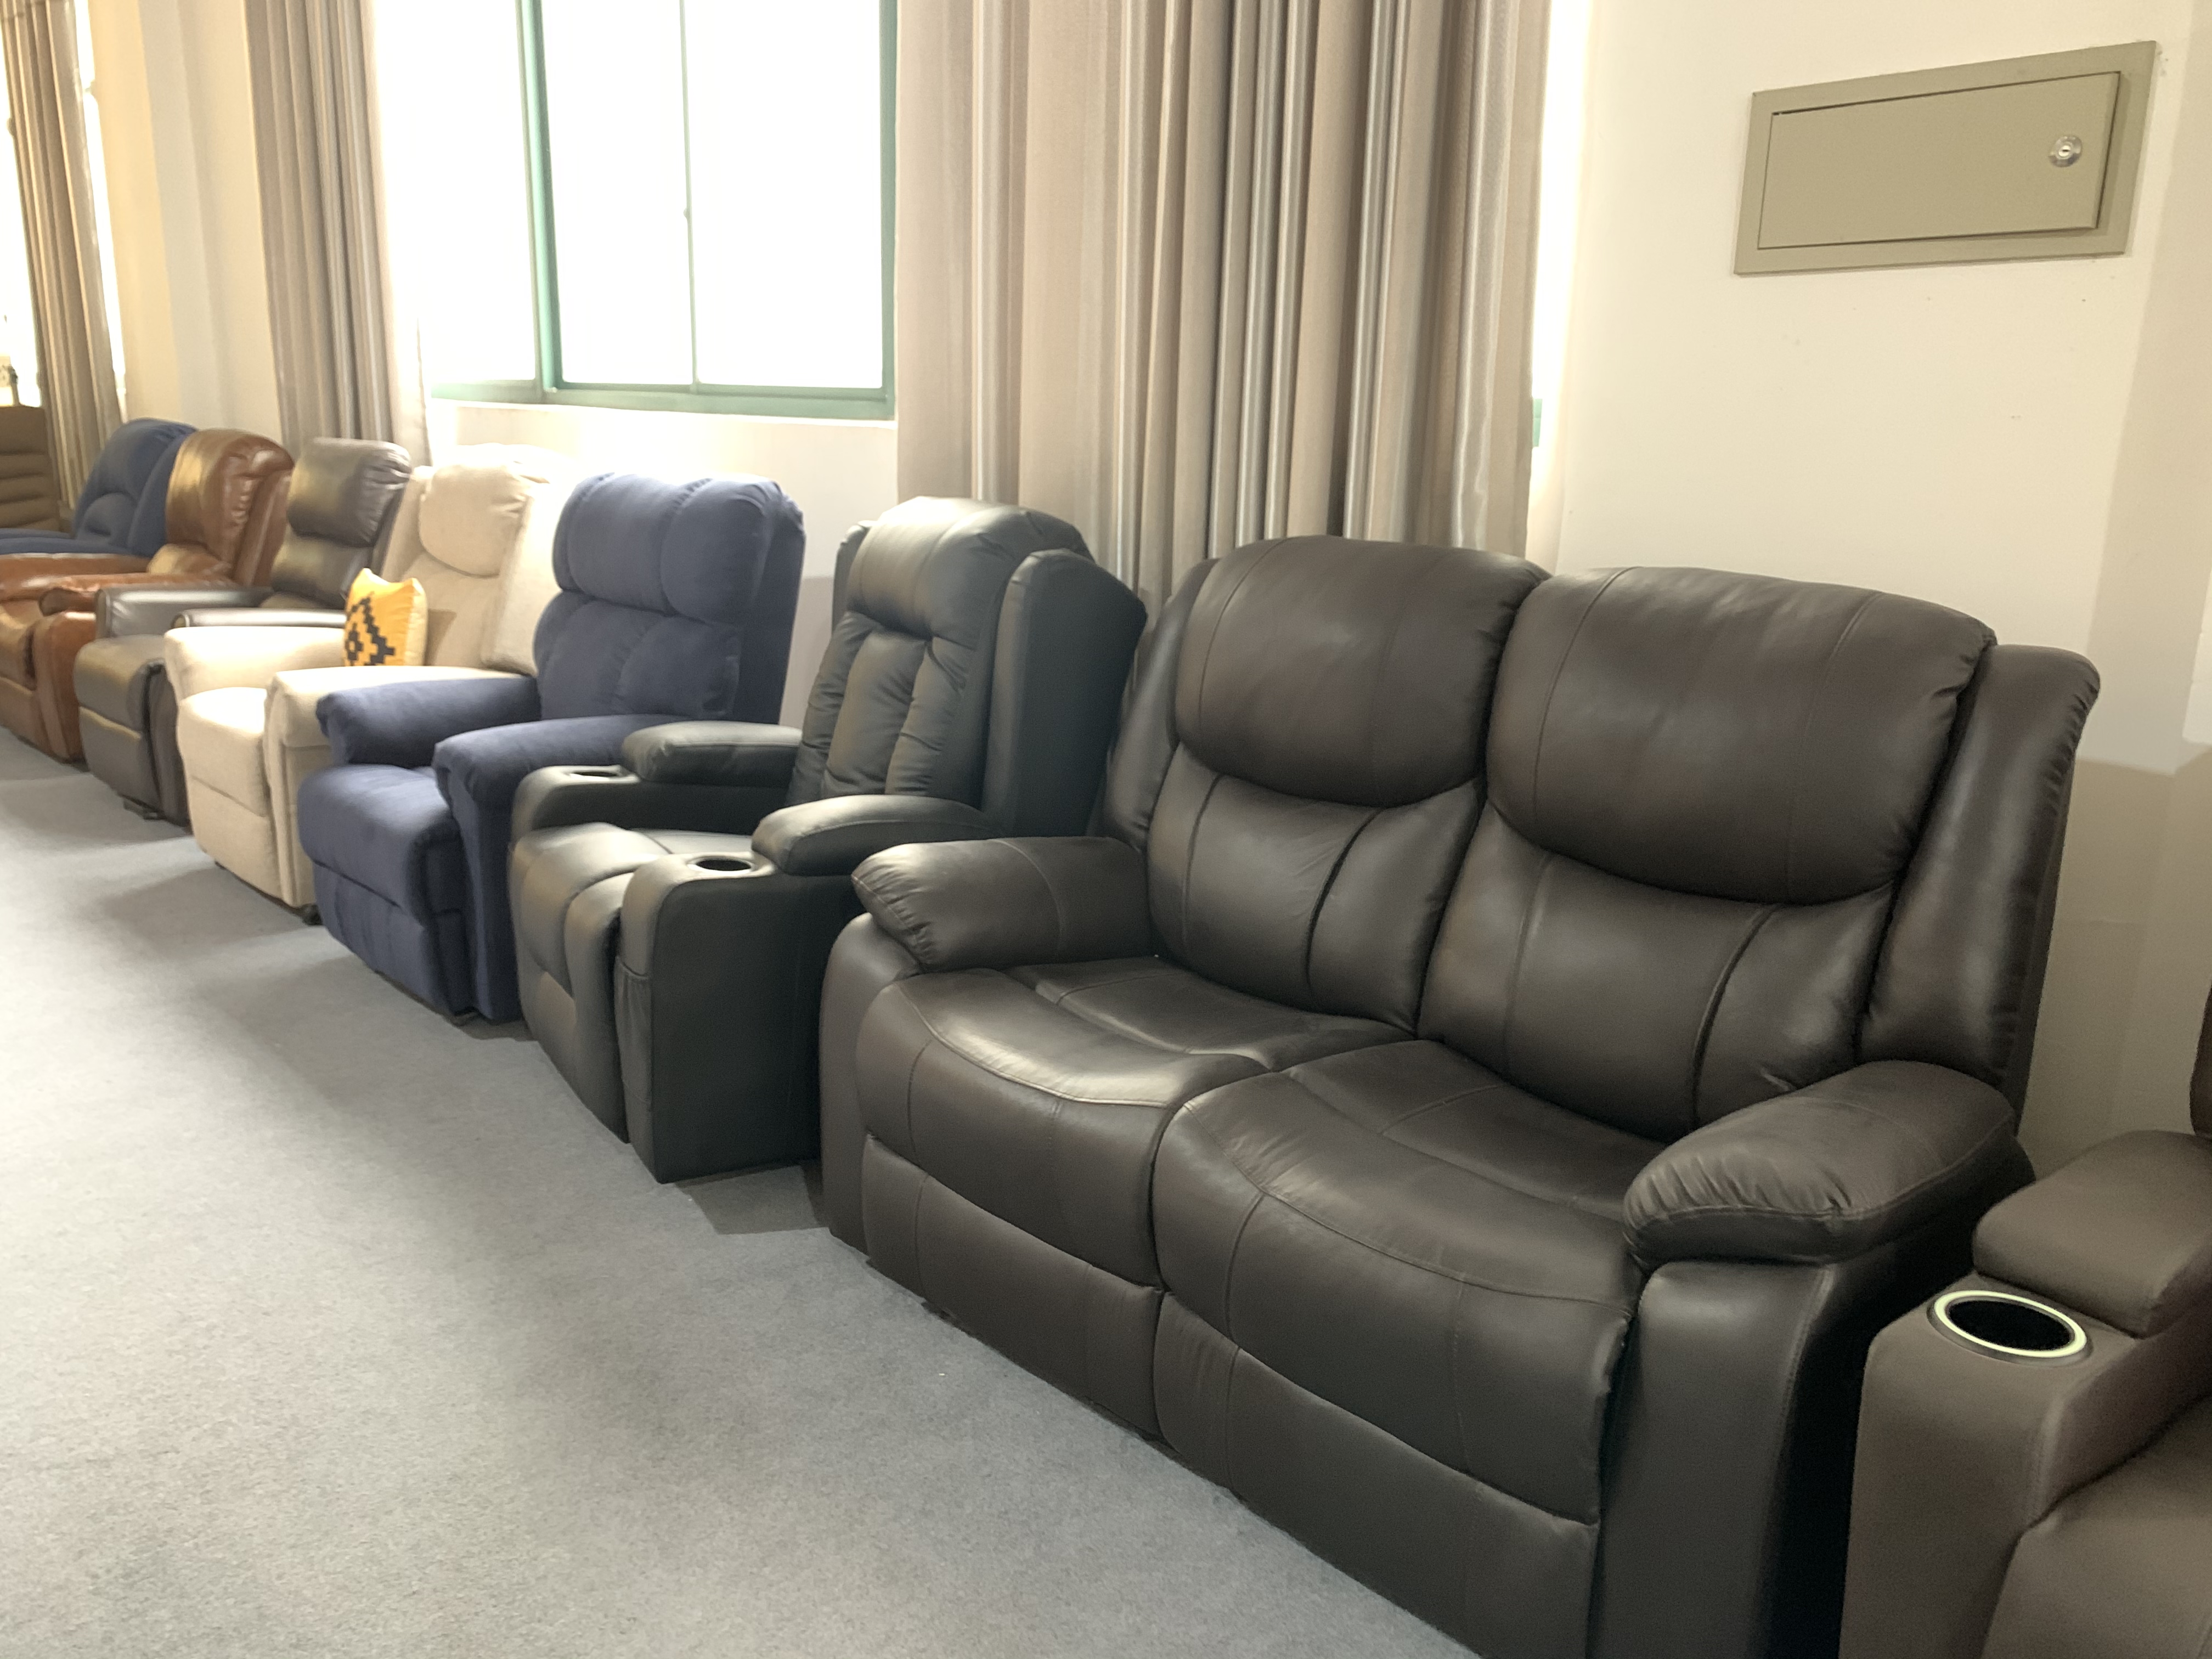 JKY Furniture Living Room 3+2+1 Bonded Leather Sofa Set